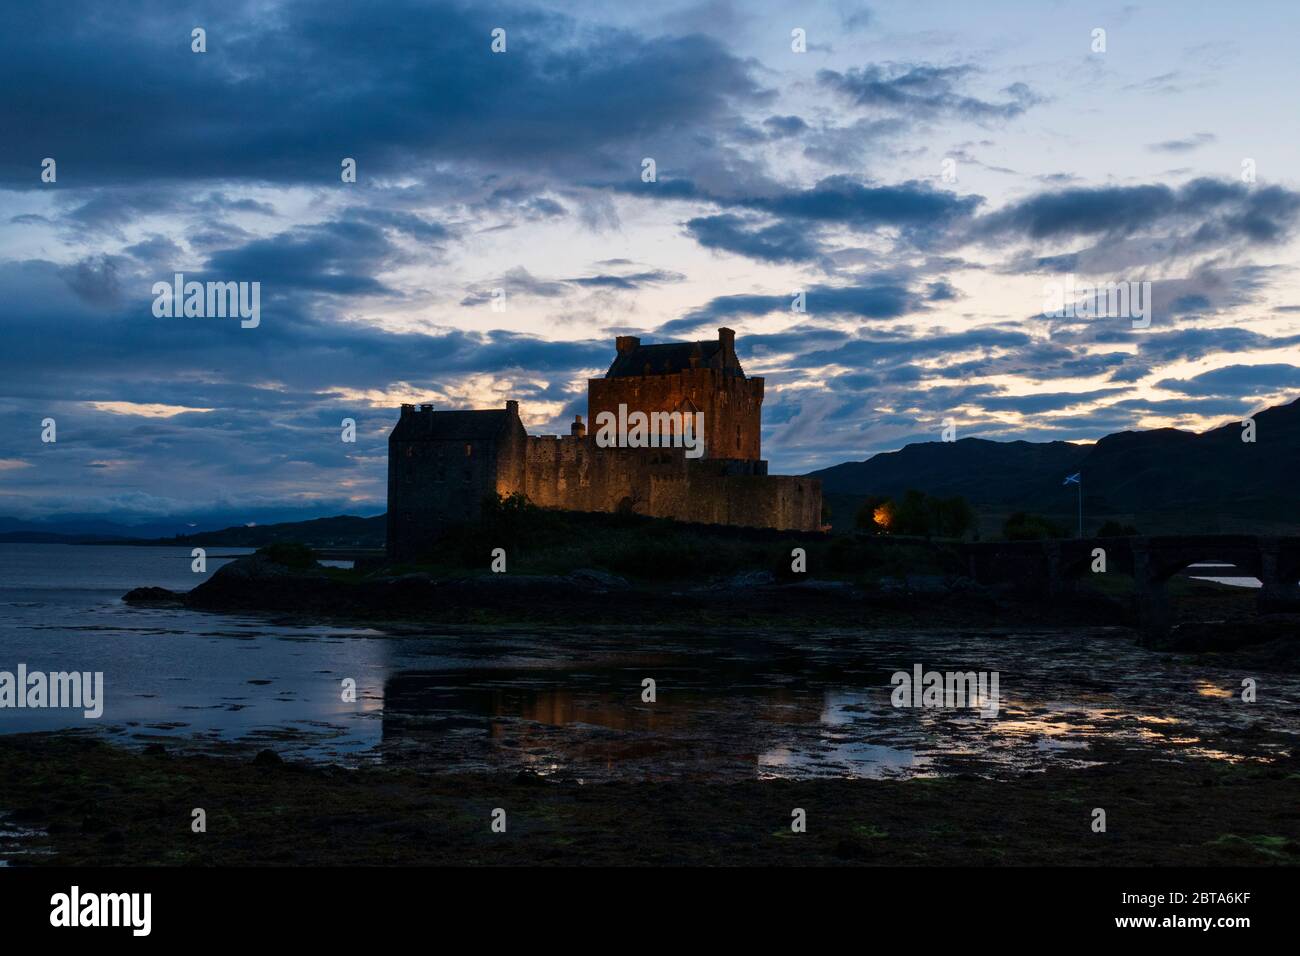 Eilean Donan Castle, schottische Burg in den Highlands von Schottland, beleuchtet bei Nacht Foto Stock